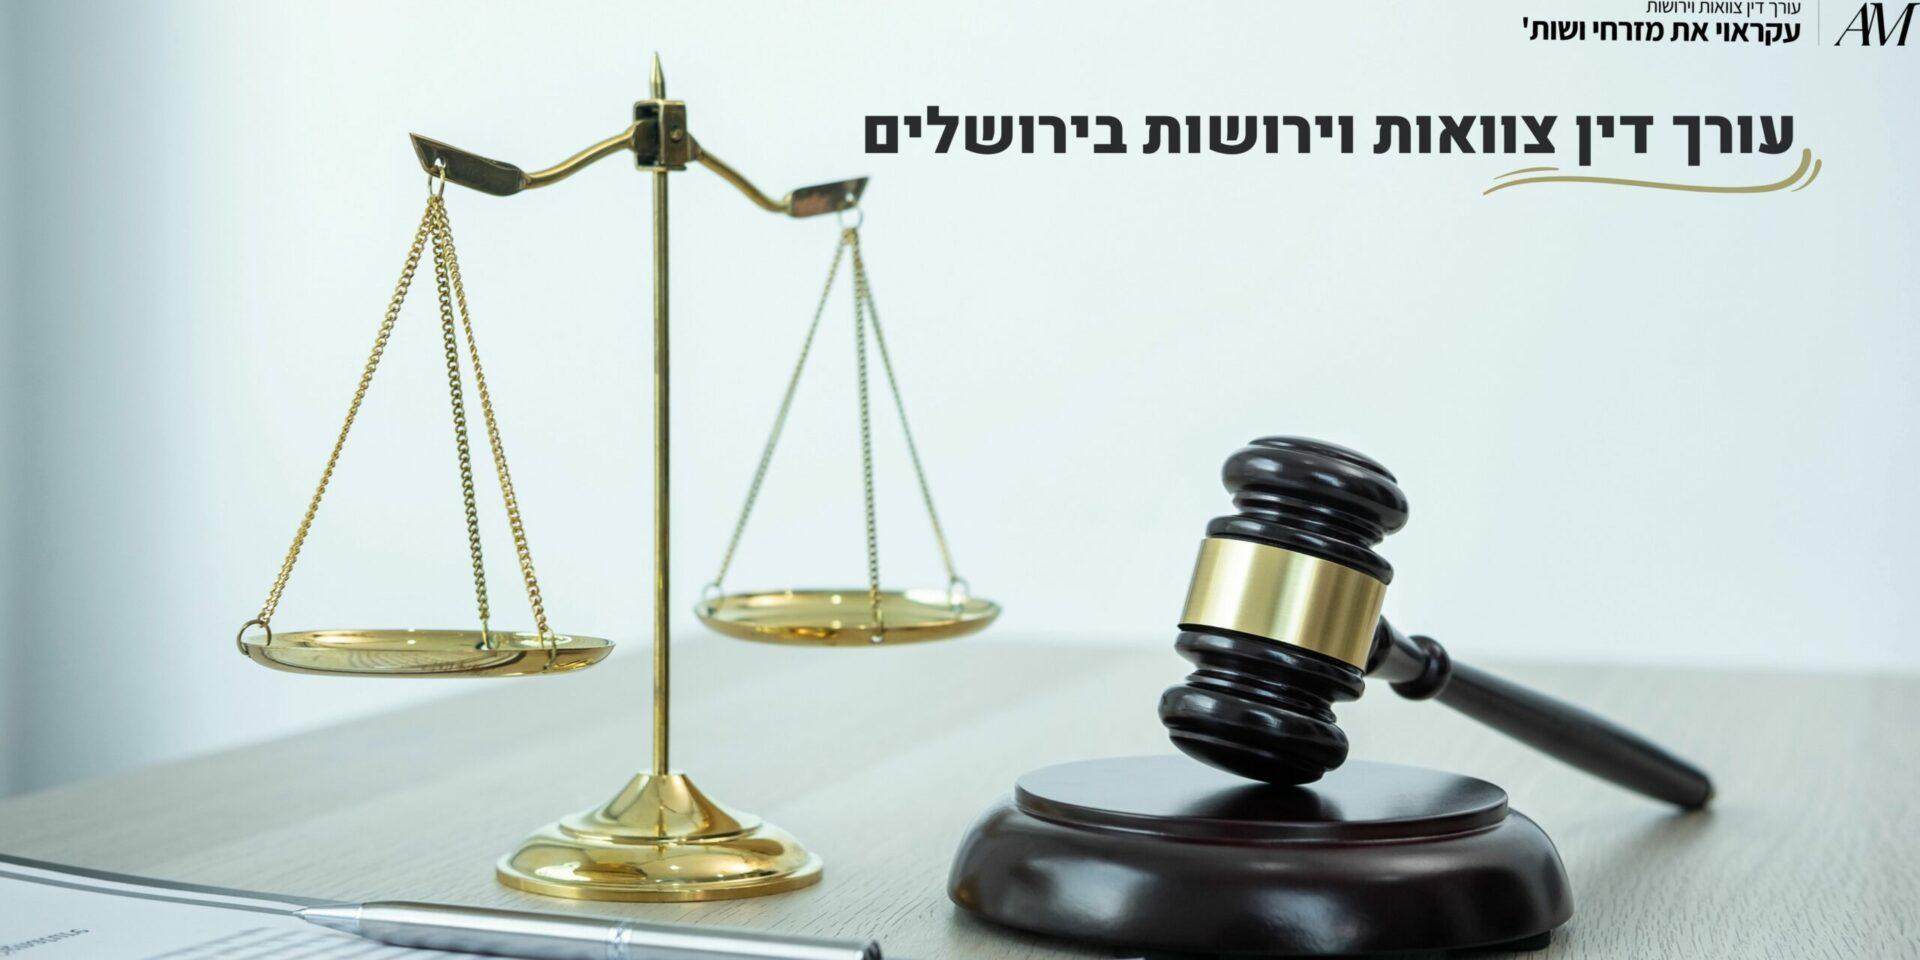 עורך דין צוואות וירושות בירושלים - עורכי דין עקראוי את מזרחי ושות'